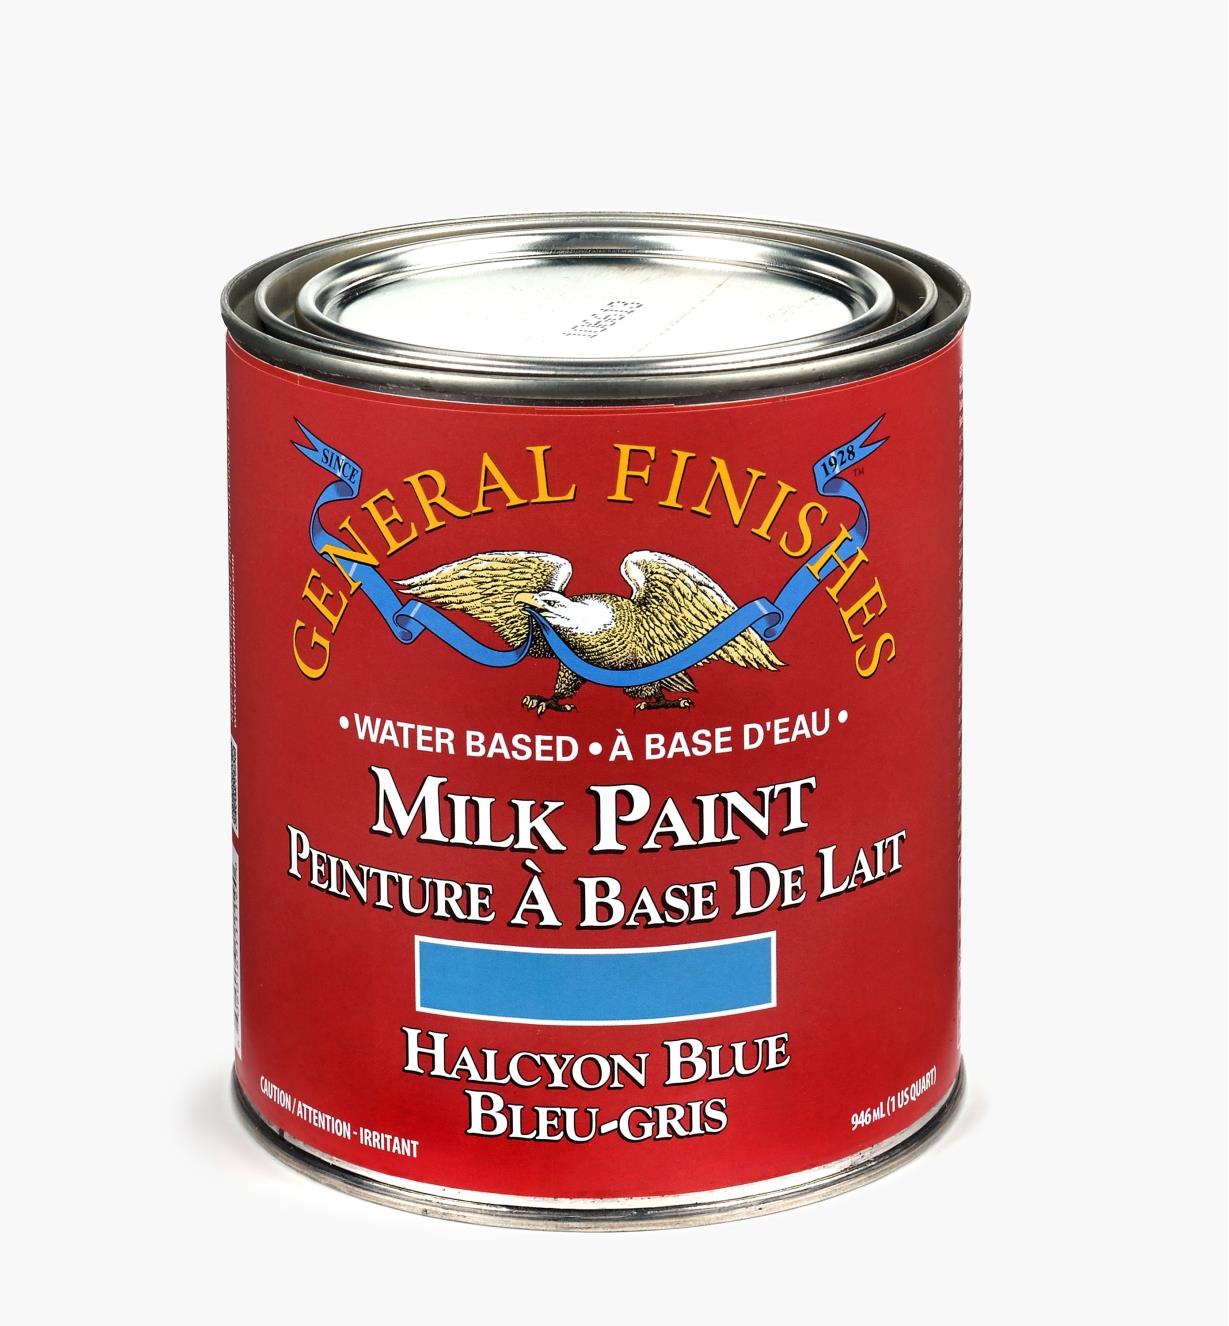 56Z1727 - Peinture de lait General, bleu-gris, la pinte